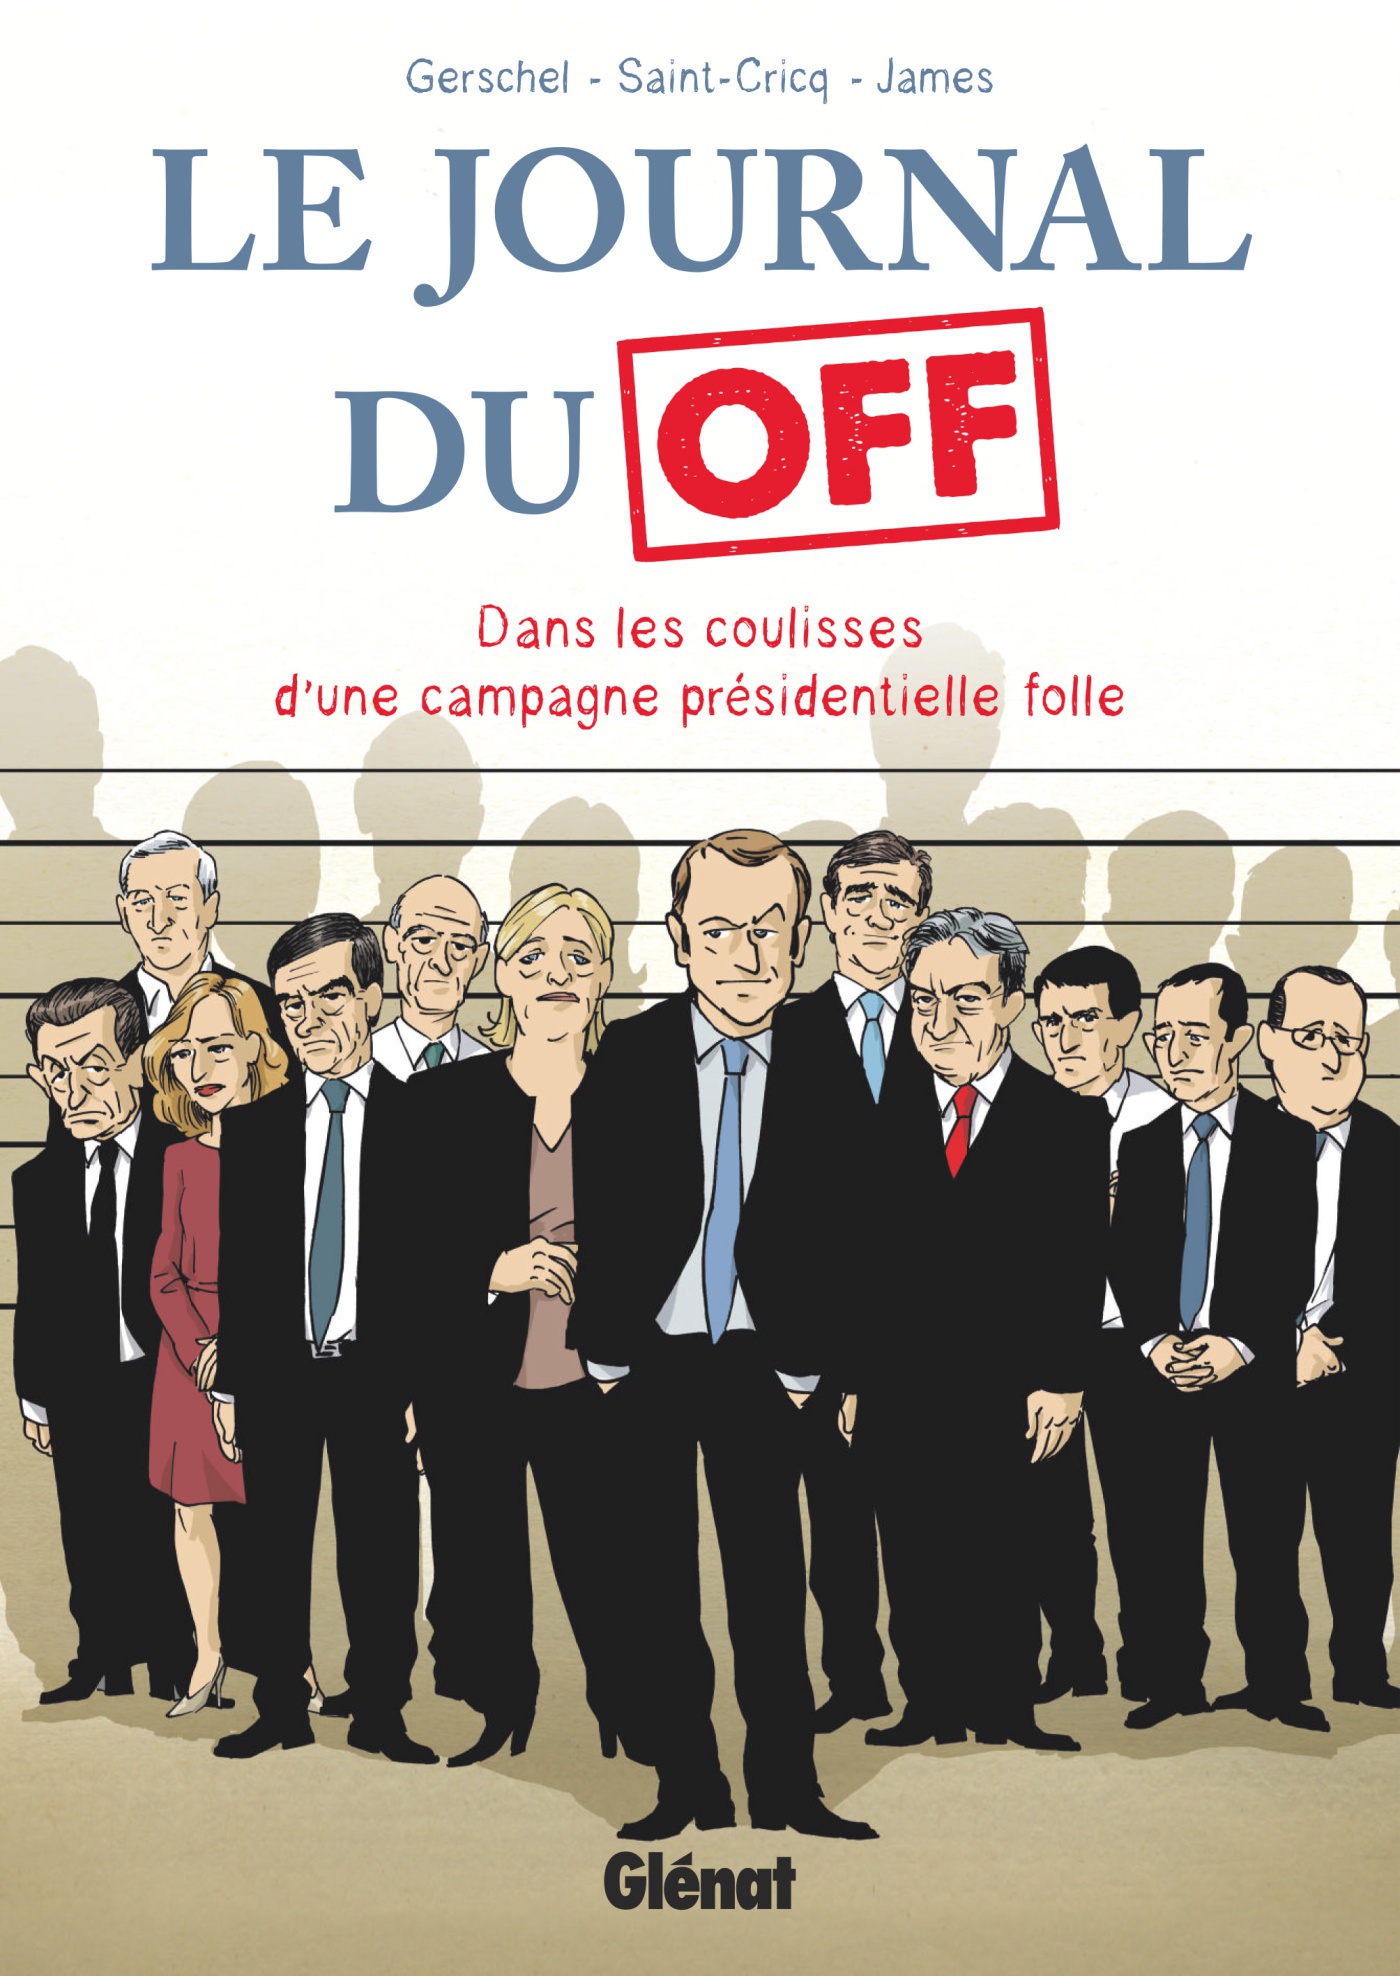 Couverture BD Le Journal du Off, Dans les coulisses de la campagne présidentielle